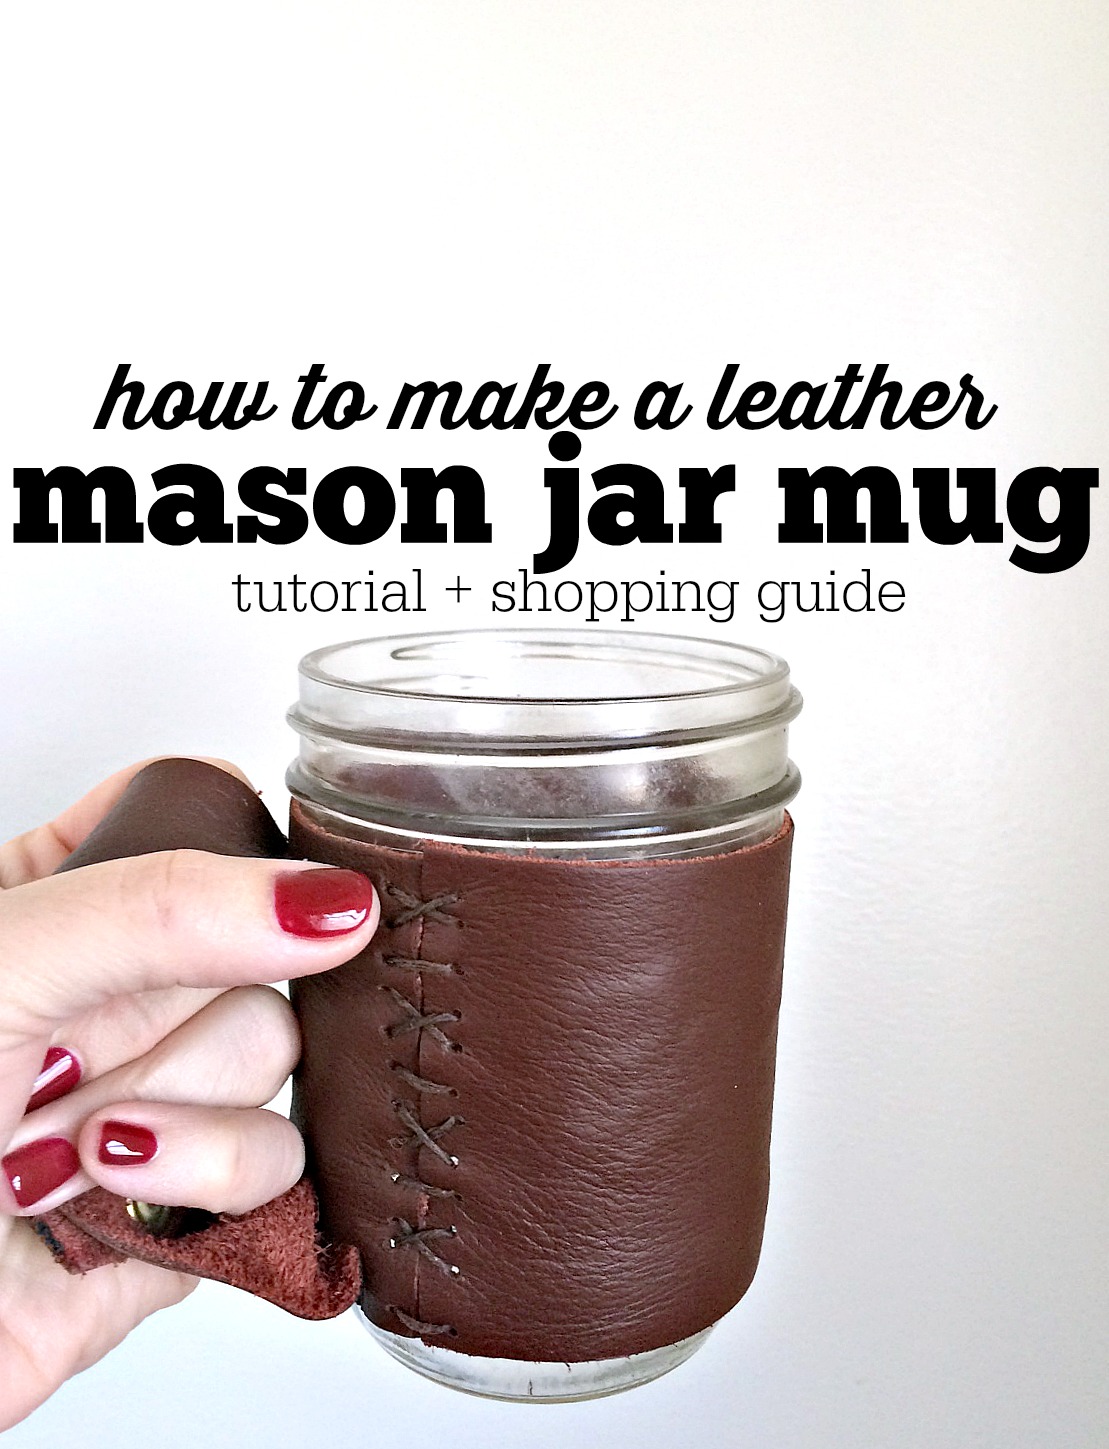 Ball Mason Jar Mug with Handle at